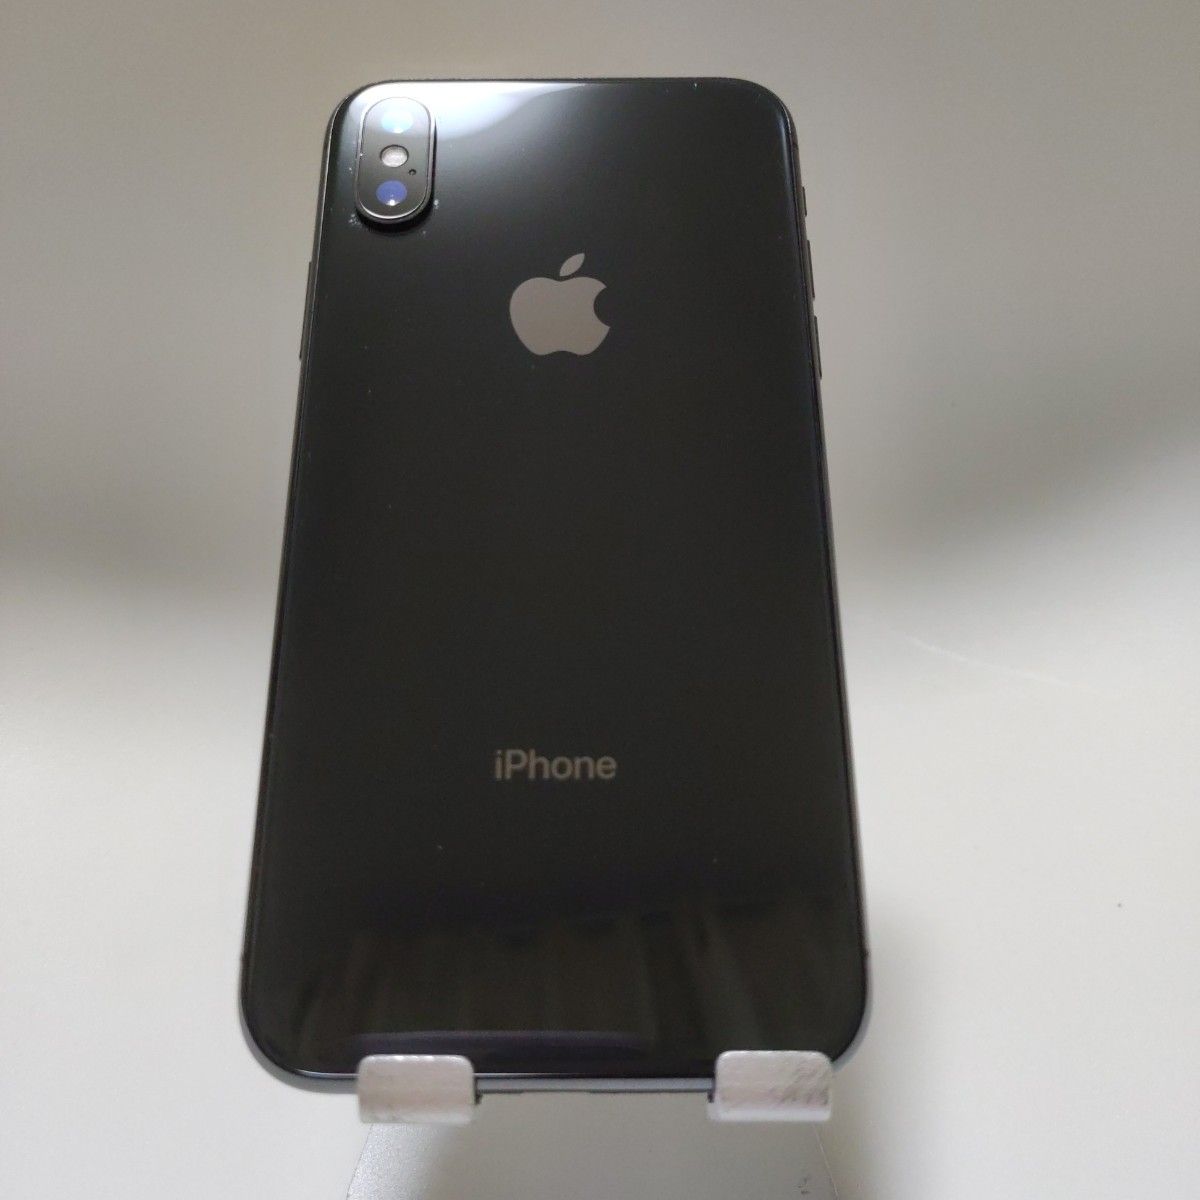 スマートフォン/携帯電話 スマートフォン本体 海外花系 iPhone x 64GB スペースグレイ SIMフリー - 通販 